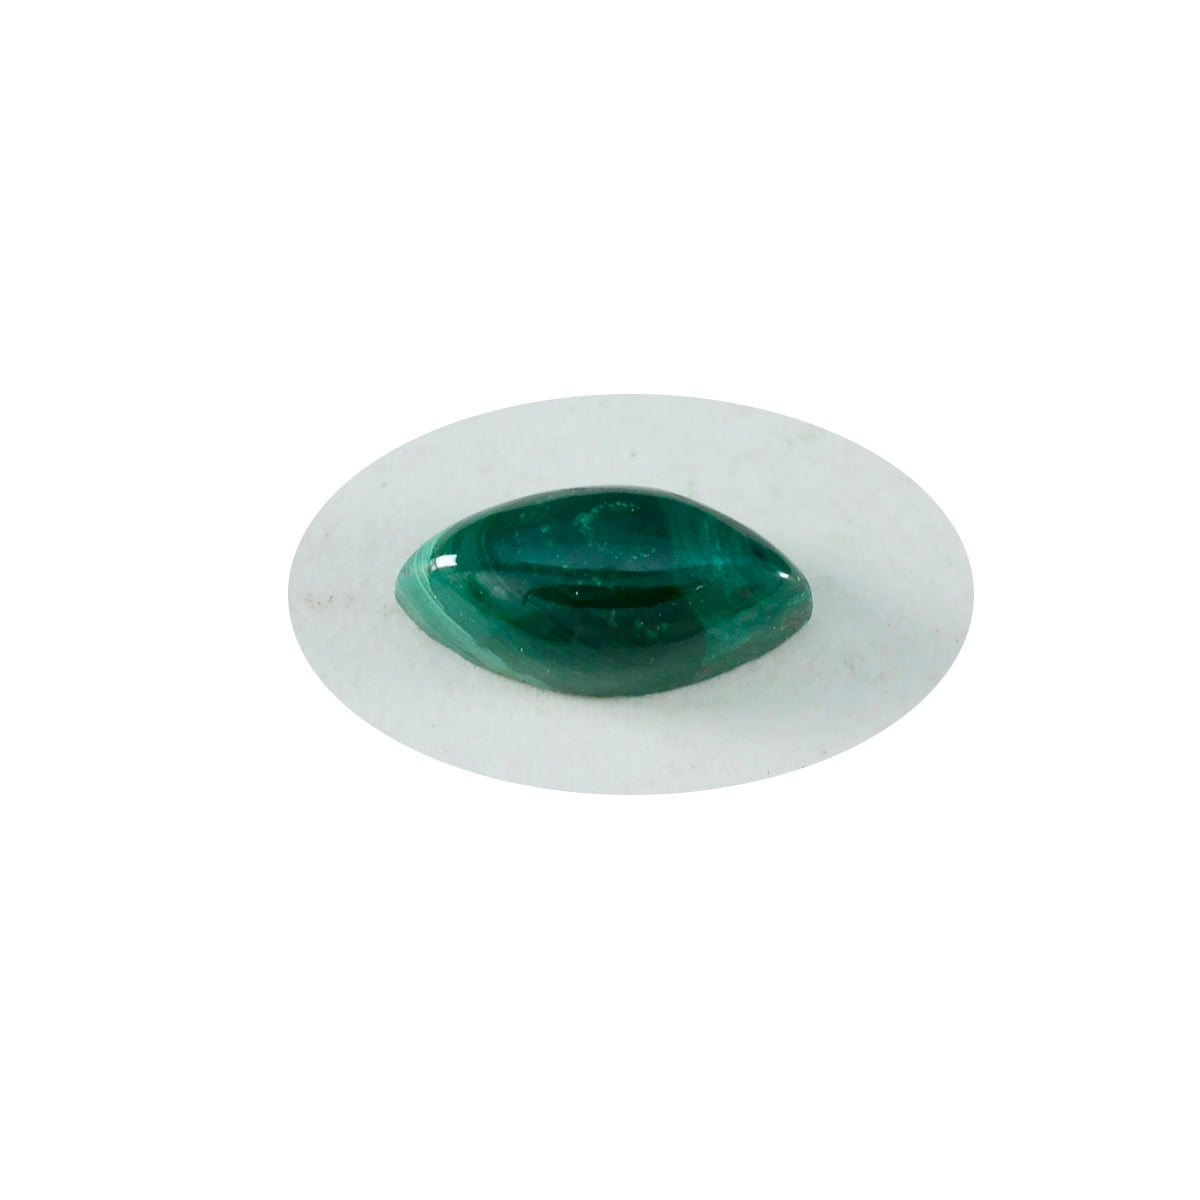 Riyogems 1pc cabochon malachite verte 5x10 mm forme marquise jolie pierre précieuse de qualité